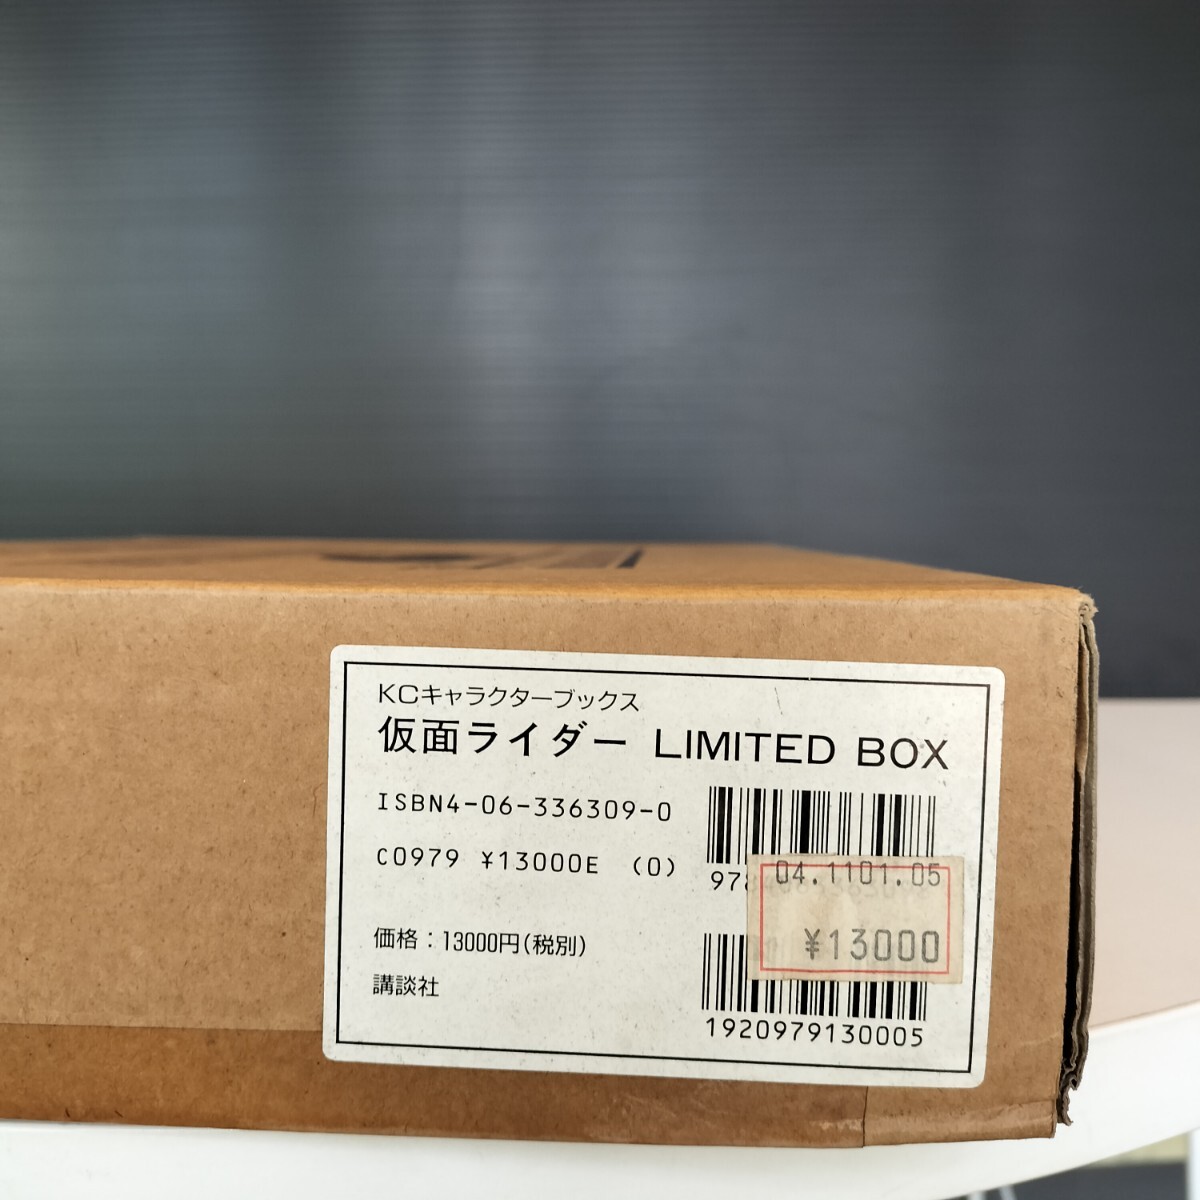 MASKED RIDER LIMITED BOX 仮面ライダー リミテッドボックス KCキャラクターブックス 講談社_画像2